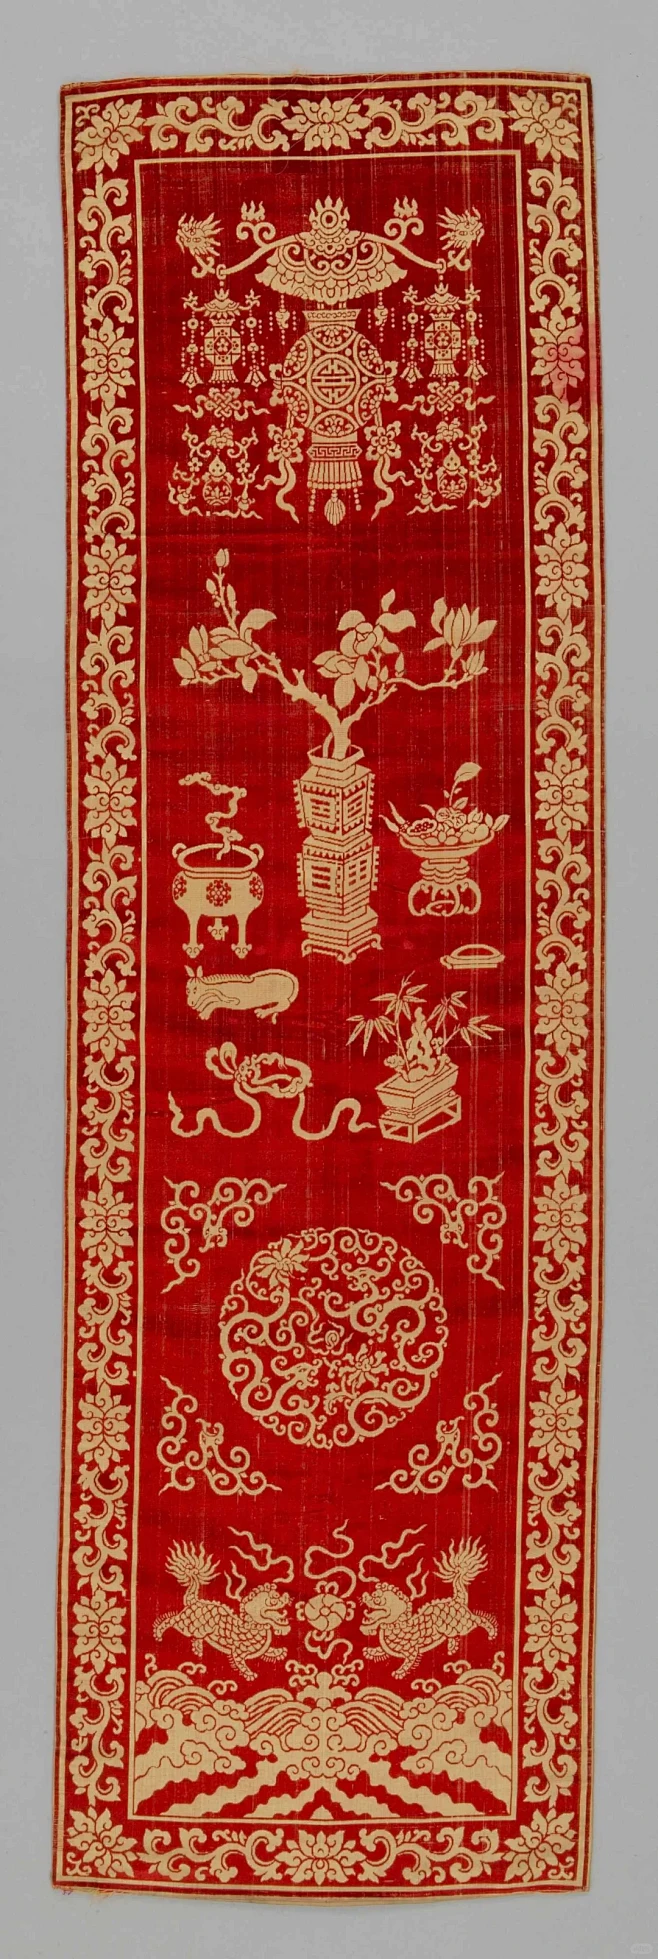 中国传统纹样 | 灯笼博古纹